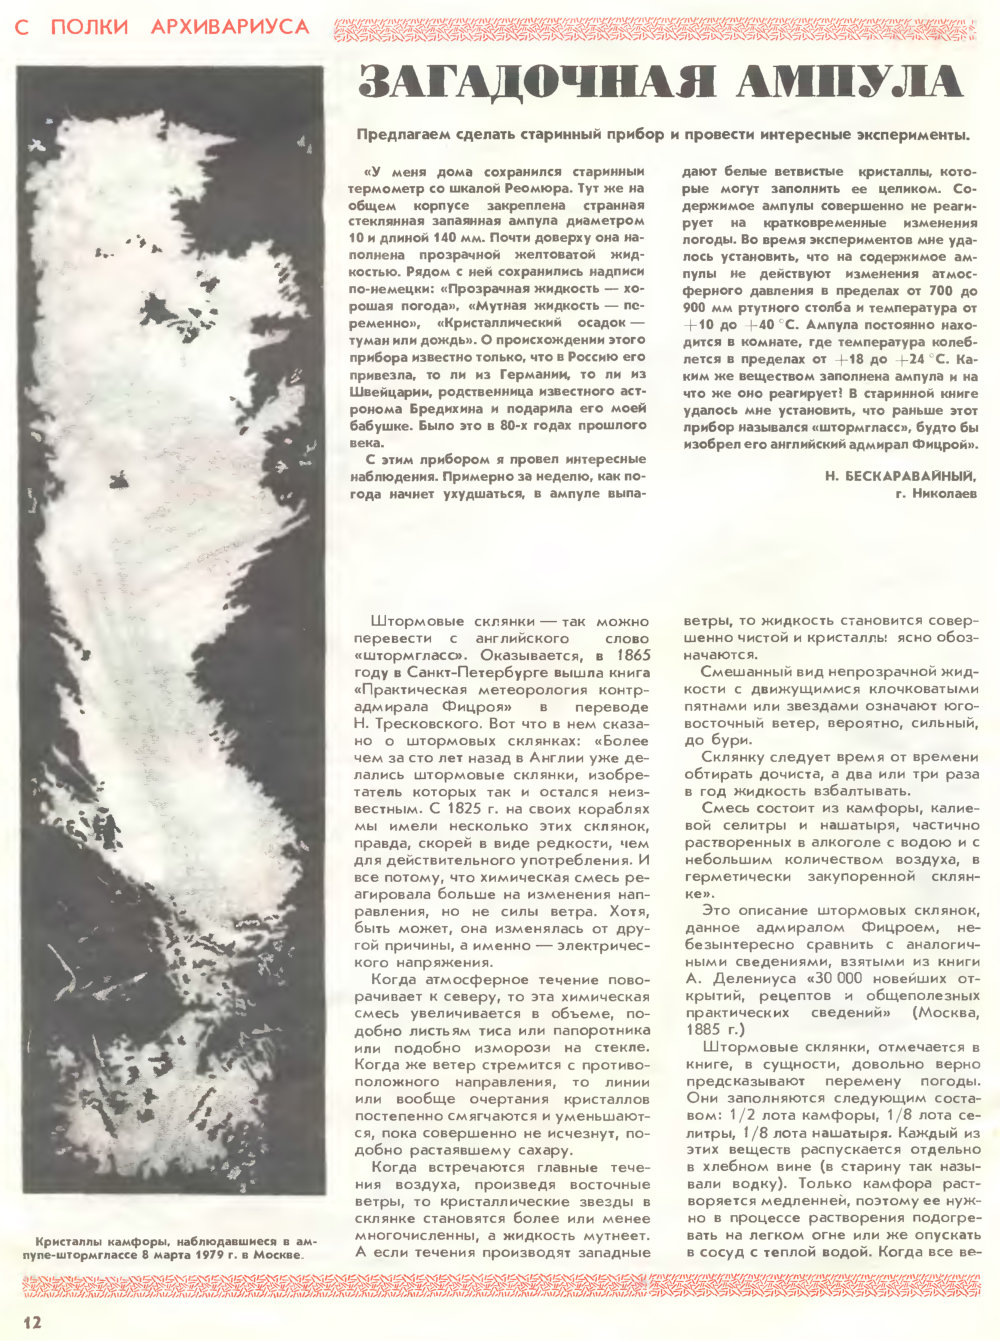 Загадочная ампула. А. Андреев. Юный Техник для умелых рук, 1989, №1, с.12-13. Фотокопия №1